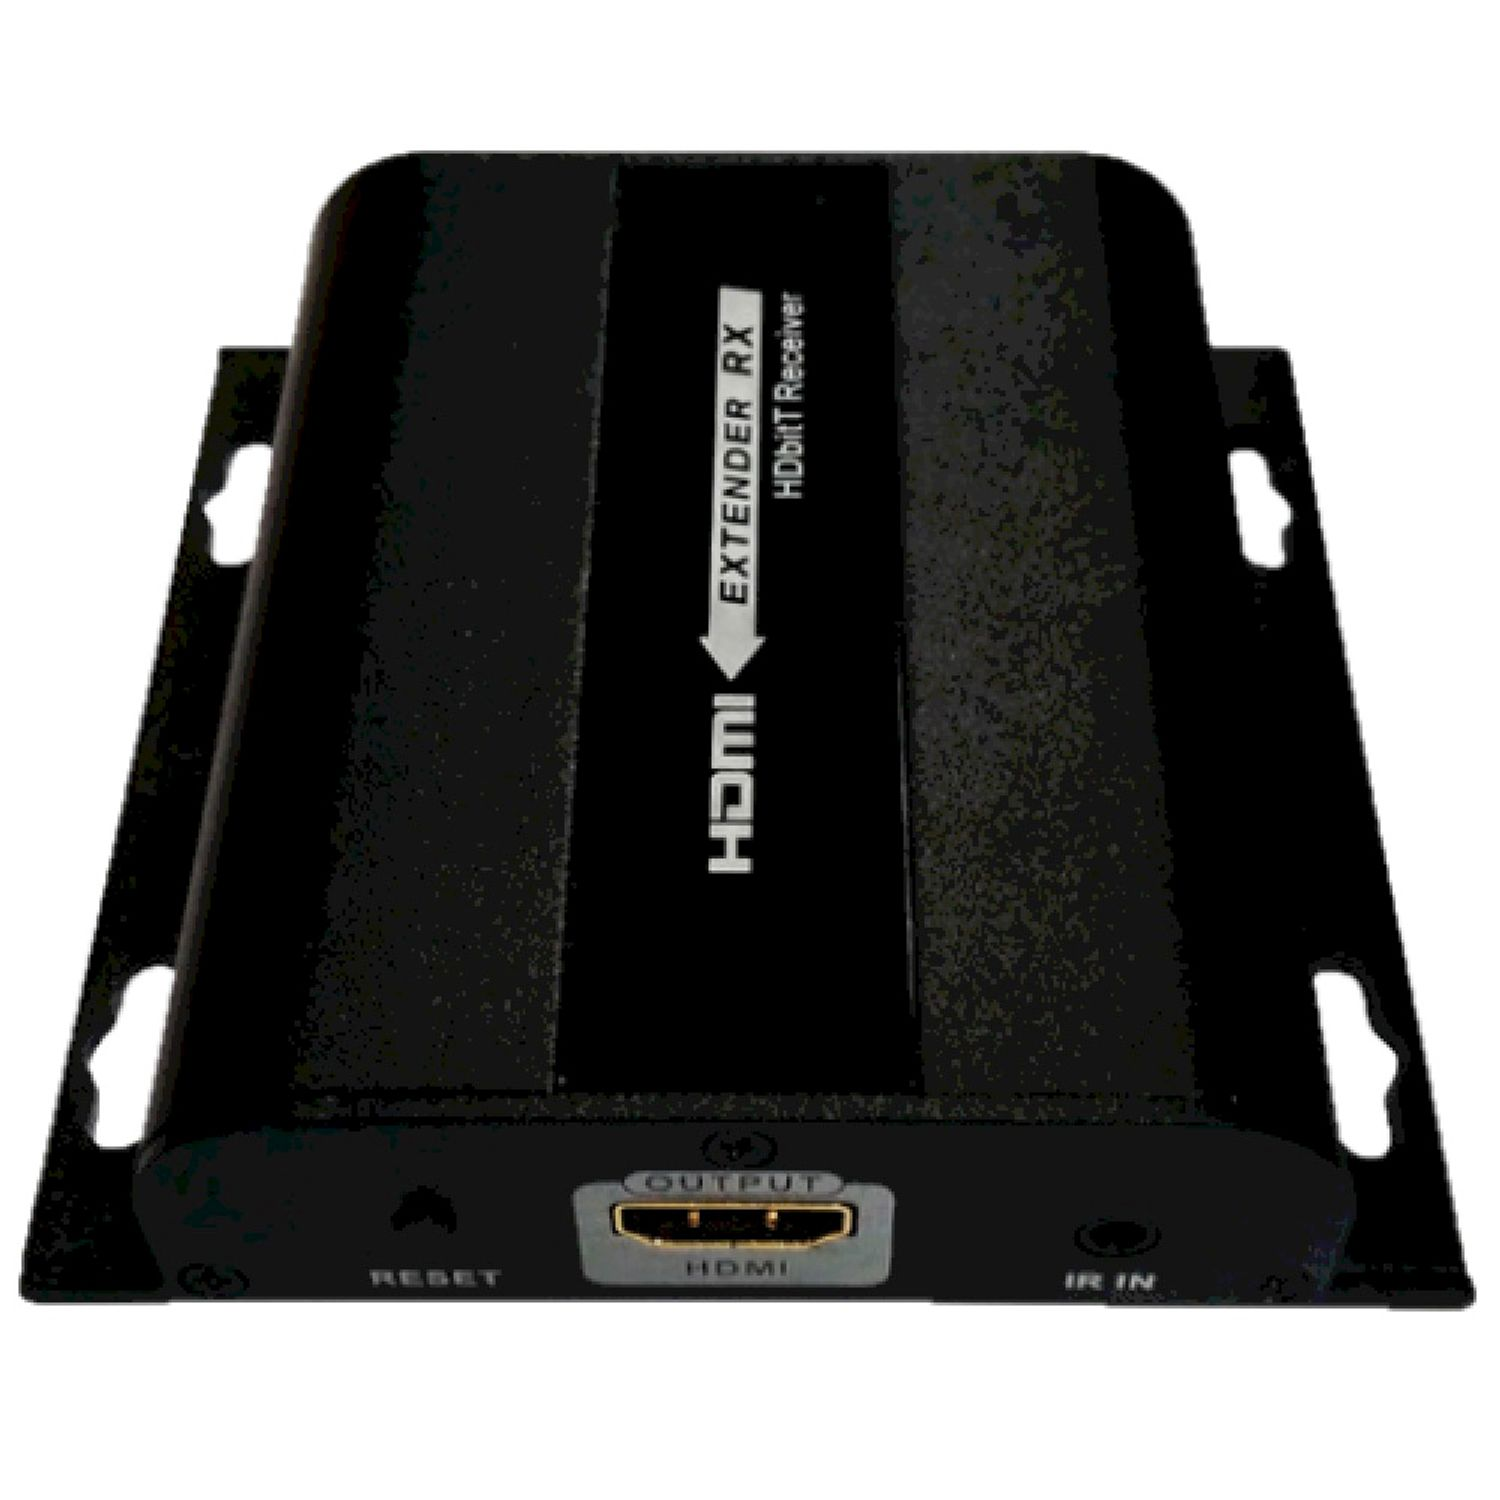 Zubehör HHEN-120 (PC), Adapter schwarz und FTE Kabel MAXIMAL